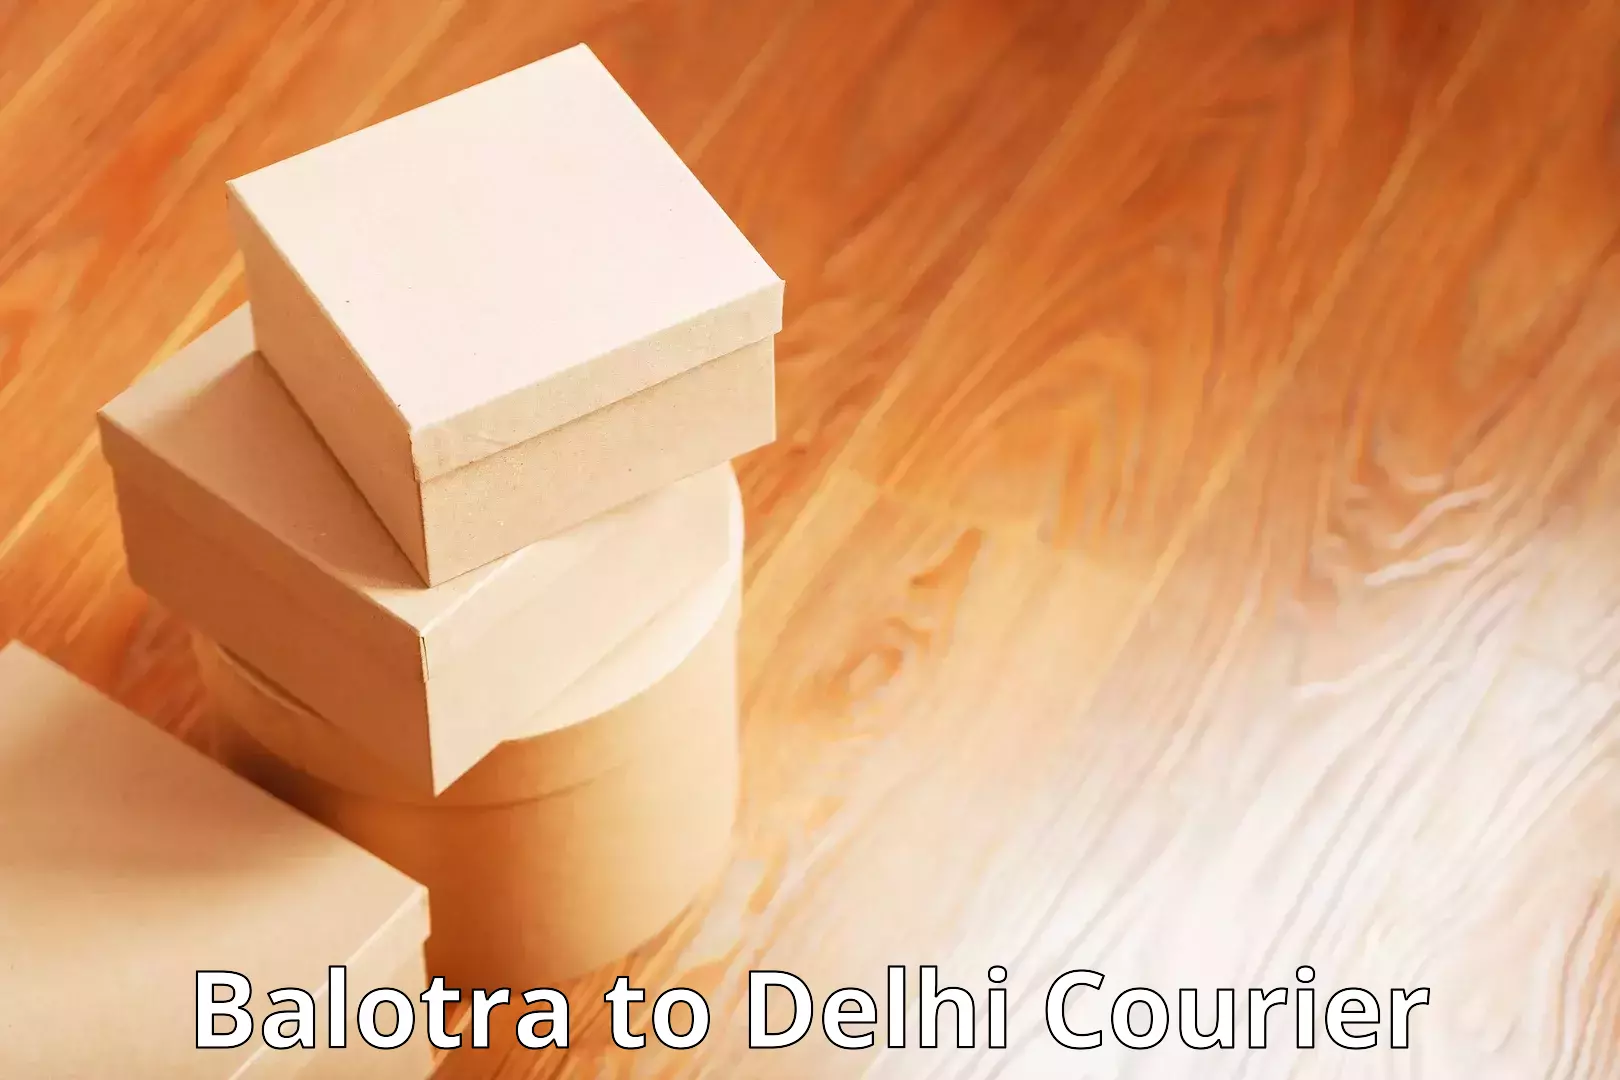 Courier service comparison Balotra to Jamia Millia Islamia New Delhi